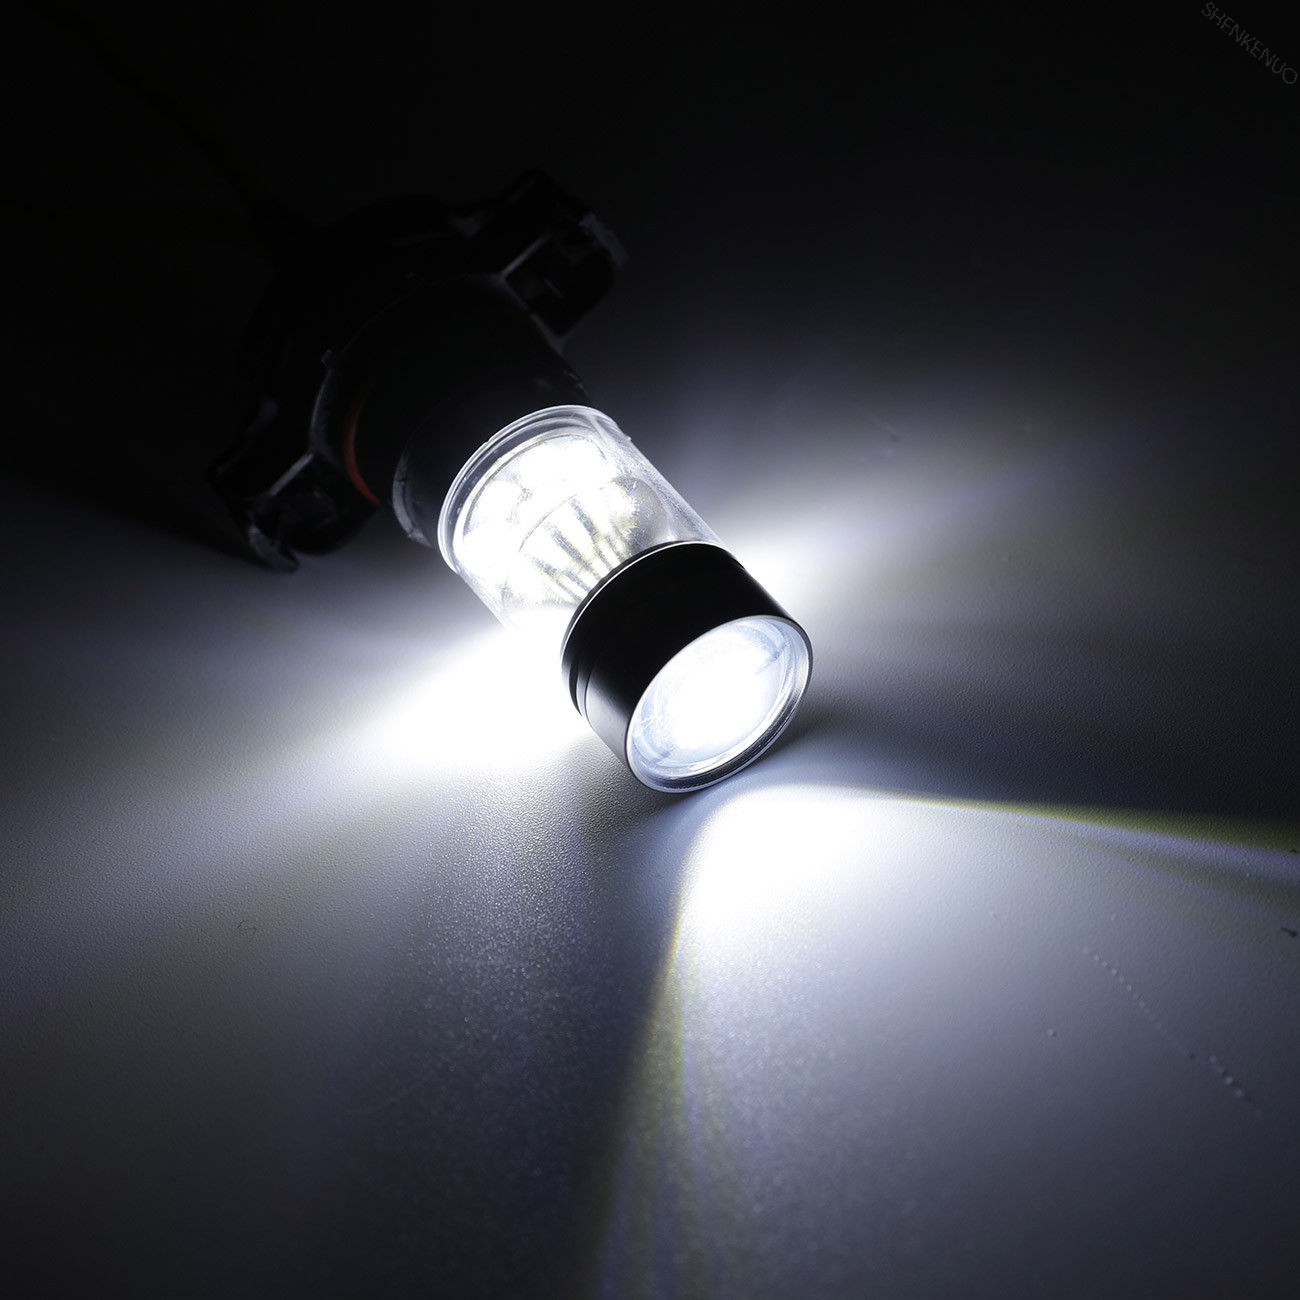 2015 silverado fog light bulb size